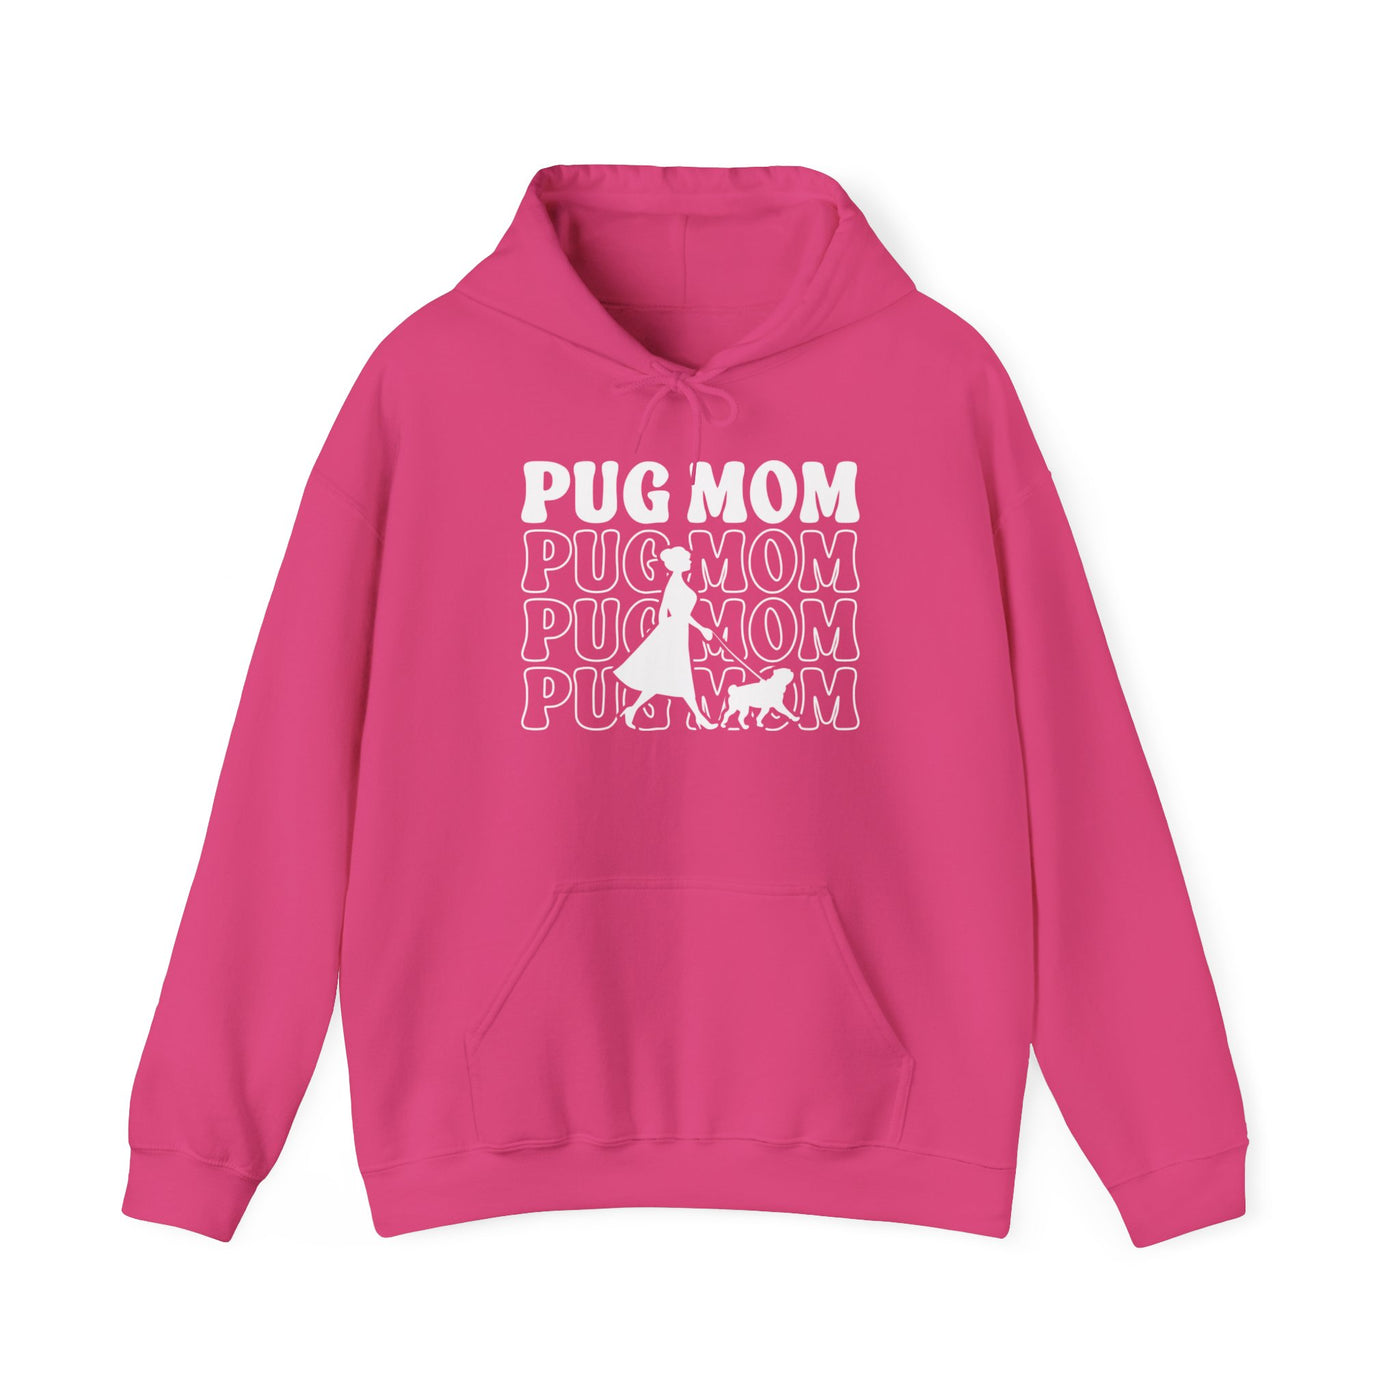 Pug Mom Walking Hoodie